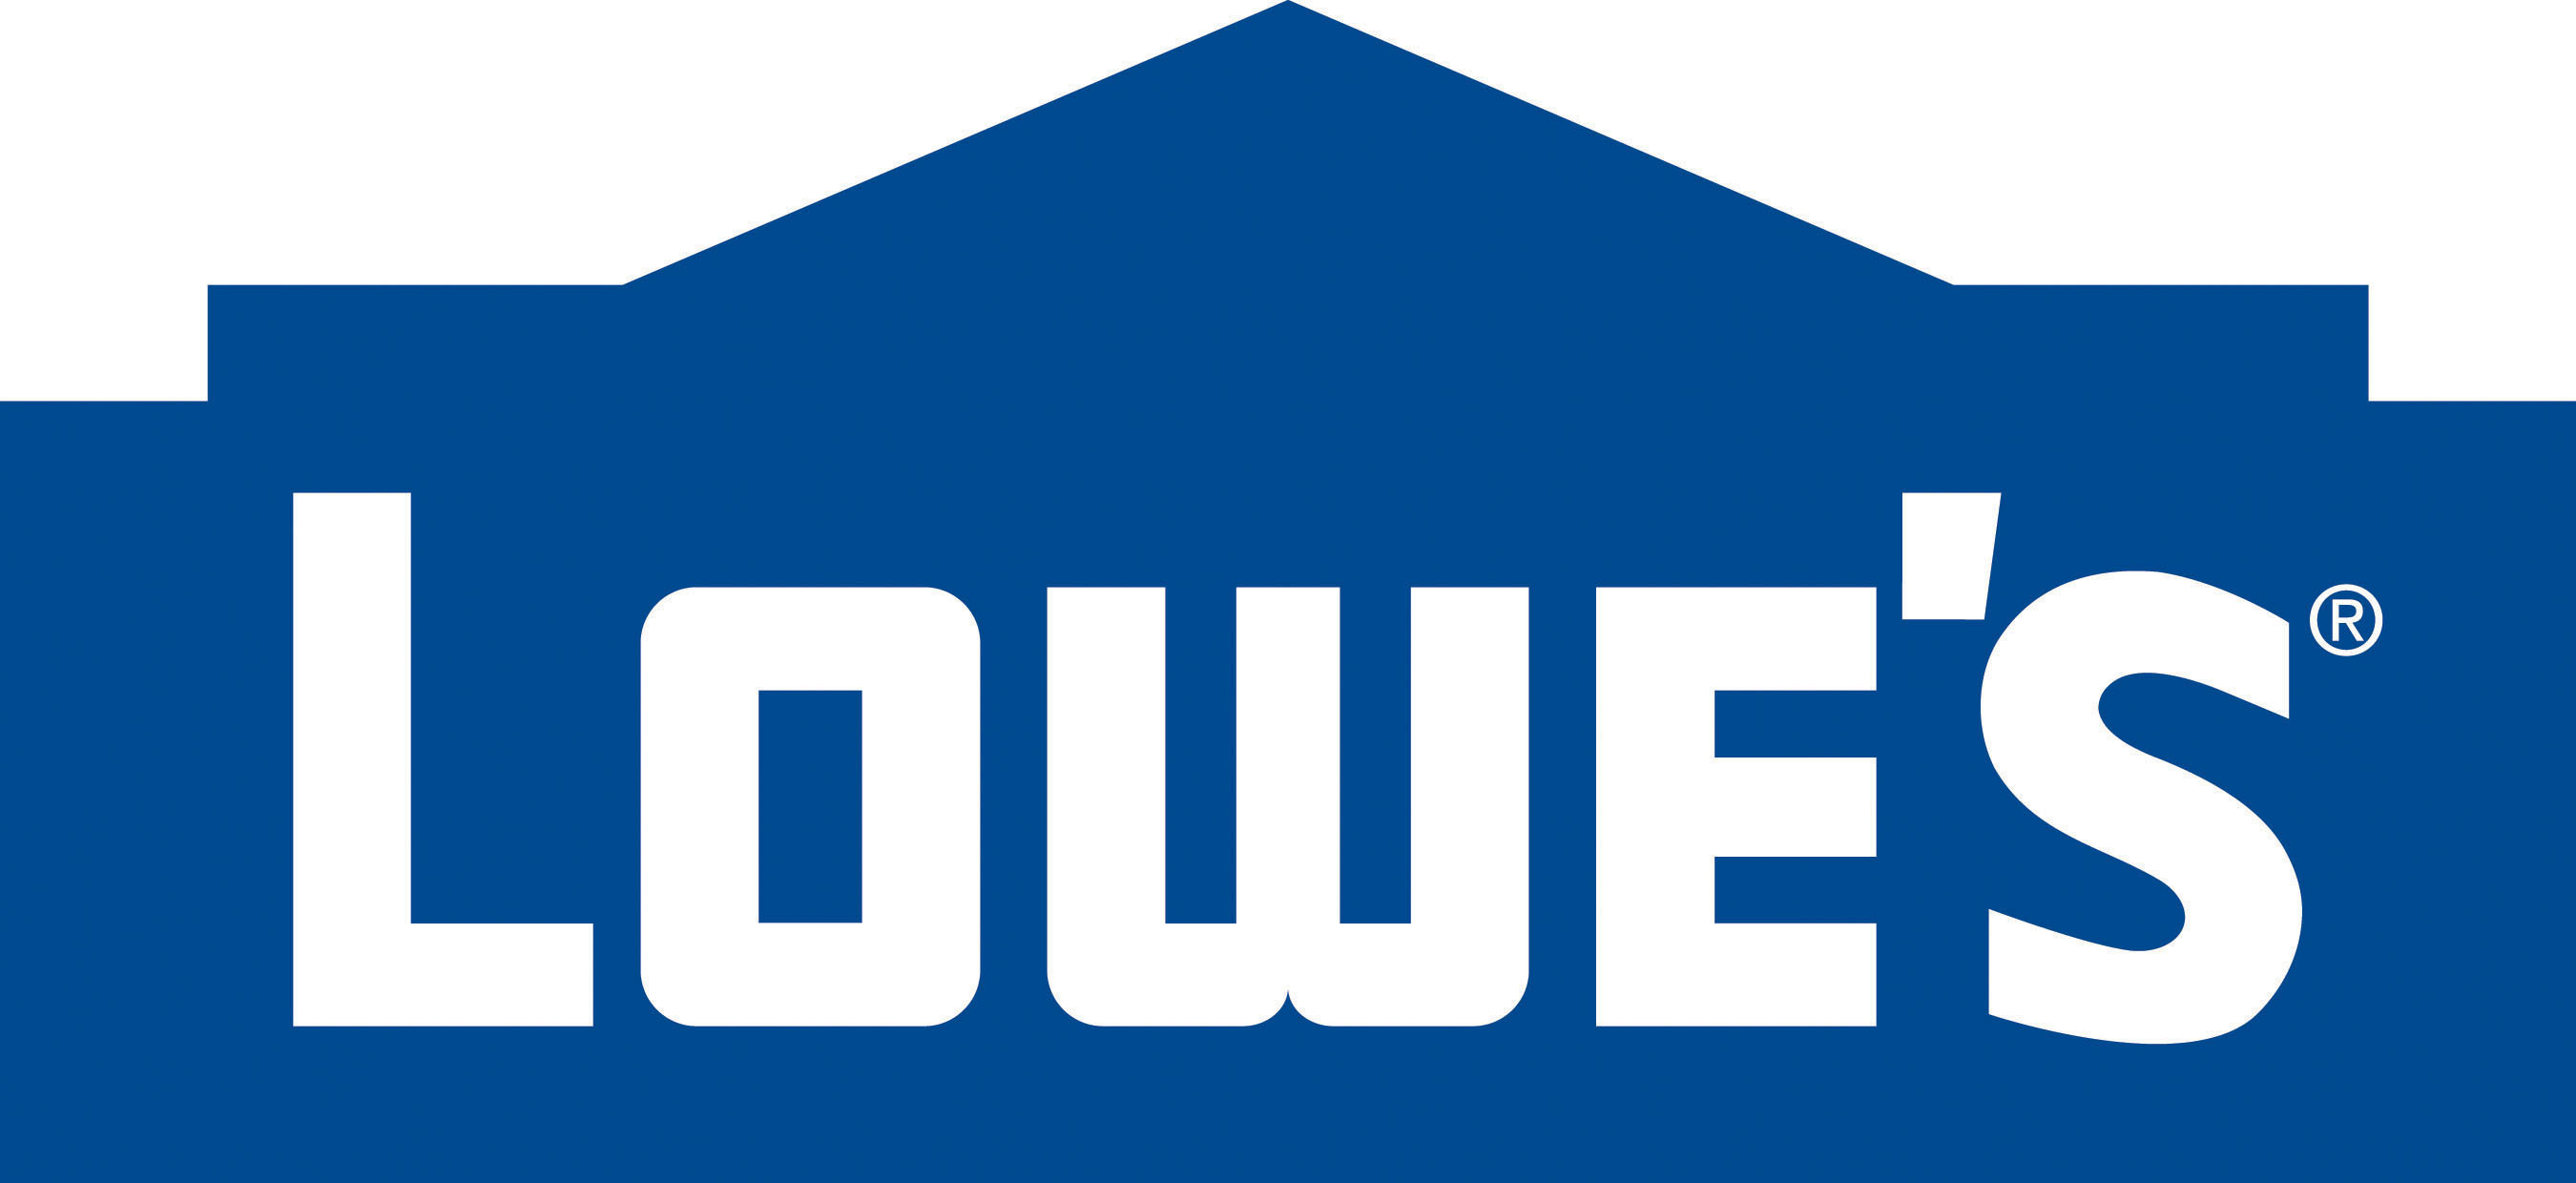 Lowe's Companies, Inc. Logo. (PRNewsFoto/Lowe's Companies, Inc.) (PRNewsFoto/LOWE'S COMPANIES, INC.)